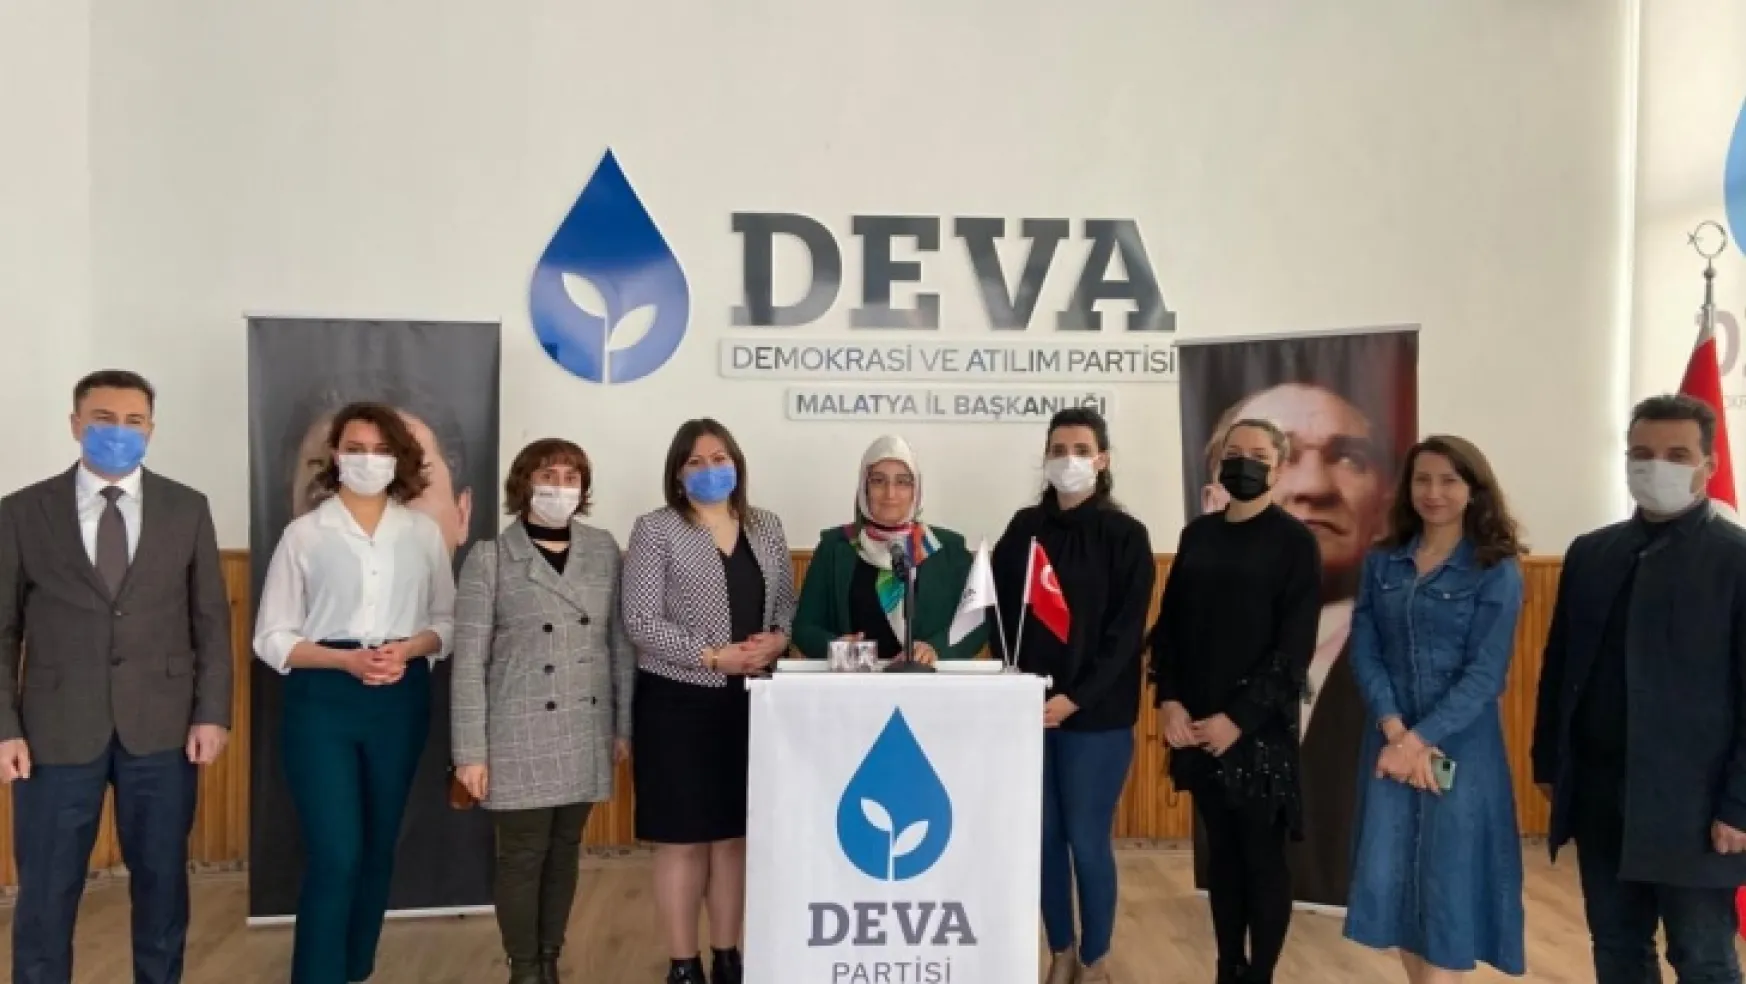 Deva Partili Kadınlar Danıştay'a Yürüyerek İstanbul Sözleşmesi'nden Çekilme Kararının İptali İçin Dava Açtılar